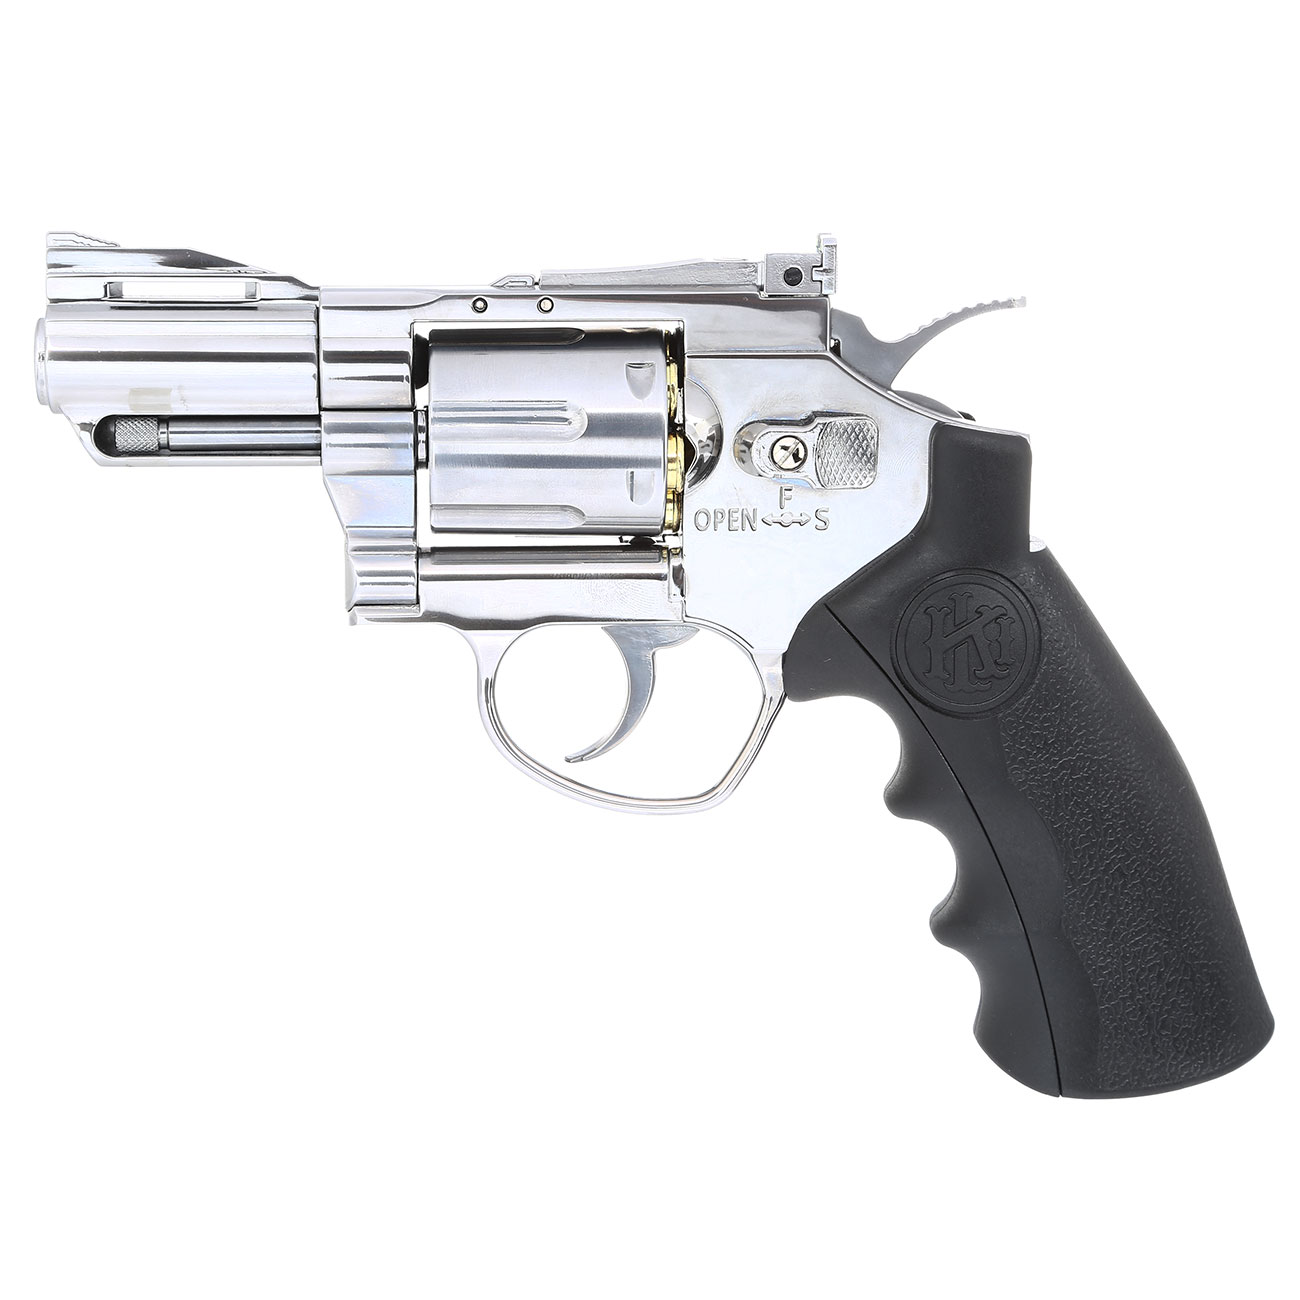 KLI Titan 2,5 Zoll Revolver Vollmetall CO2 6mm BB Chrome-Finish Bild 1